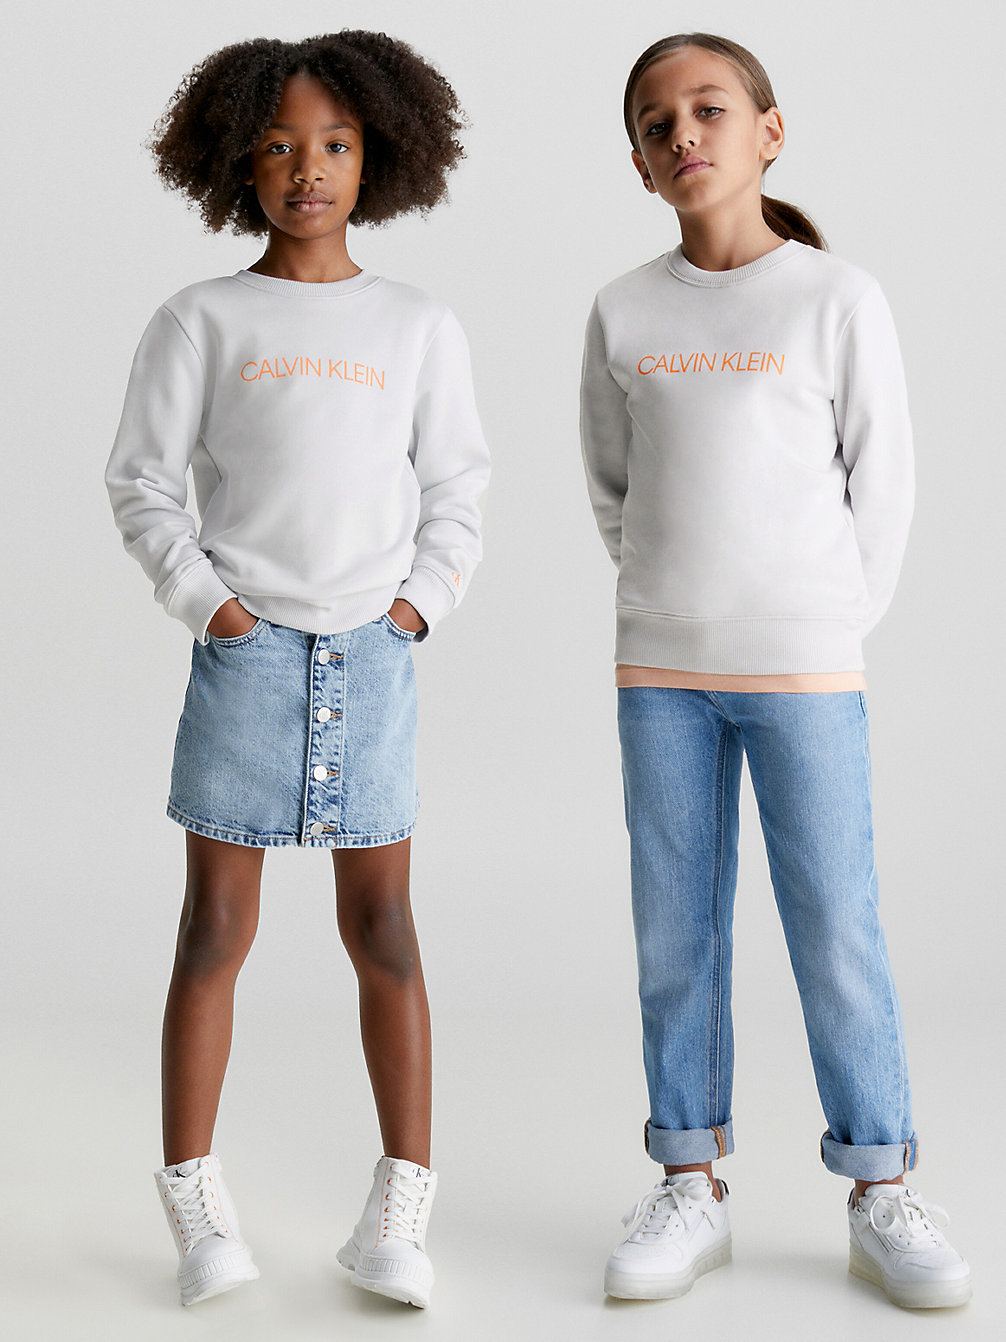 GHOST GREY > Logo-Sweatshirt Für Kinder > undefined kids unisex - Calvin Klein